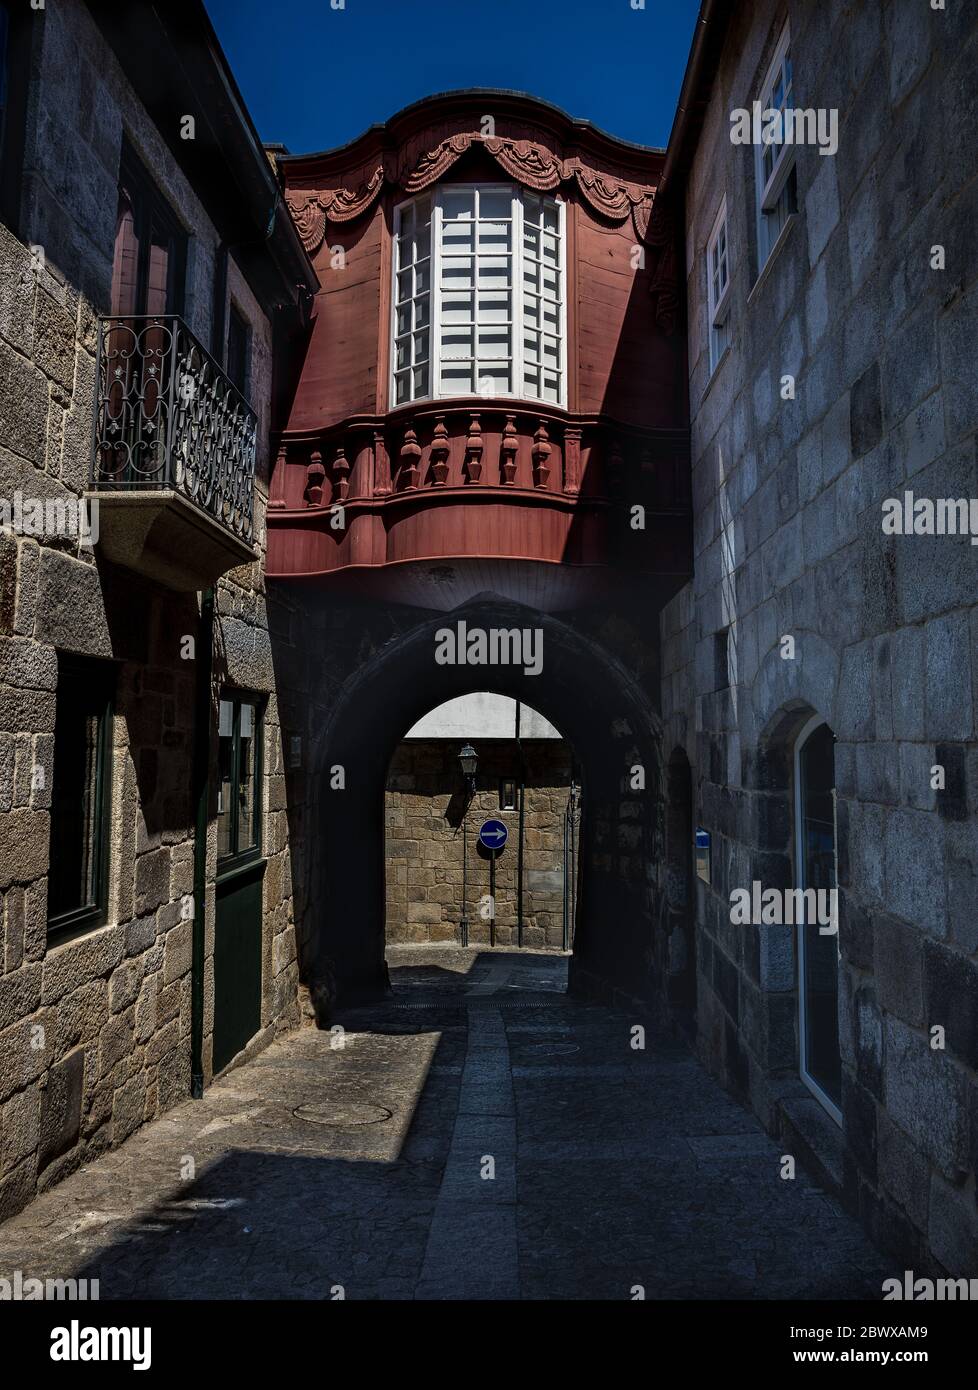 Ancienne rue étroite avec de grandes maisons médiévales en terrasse et une arcade dans la ville historique de Lomego Portugal Banque D'Images